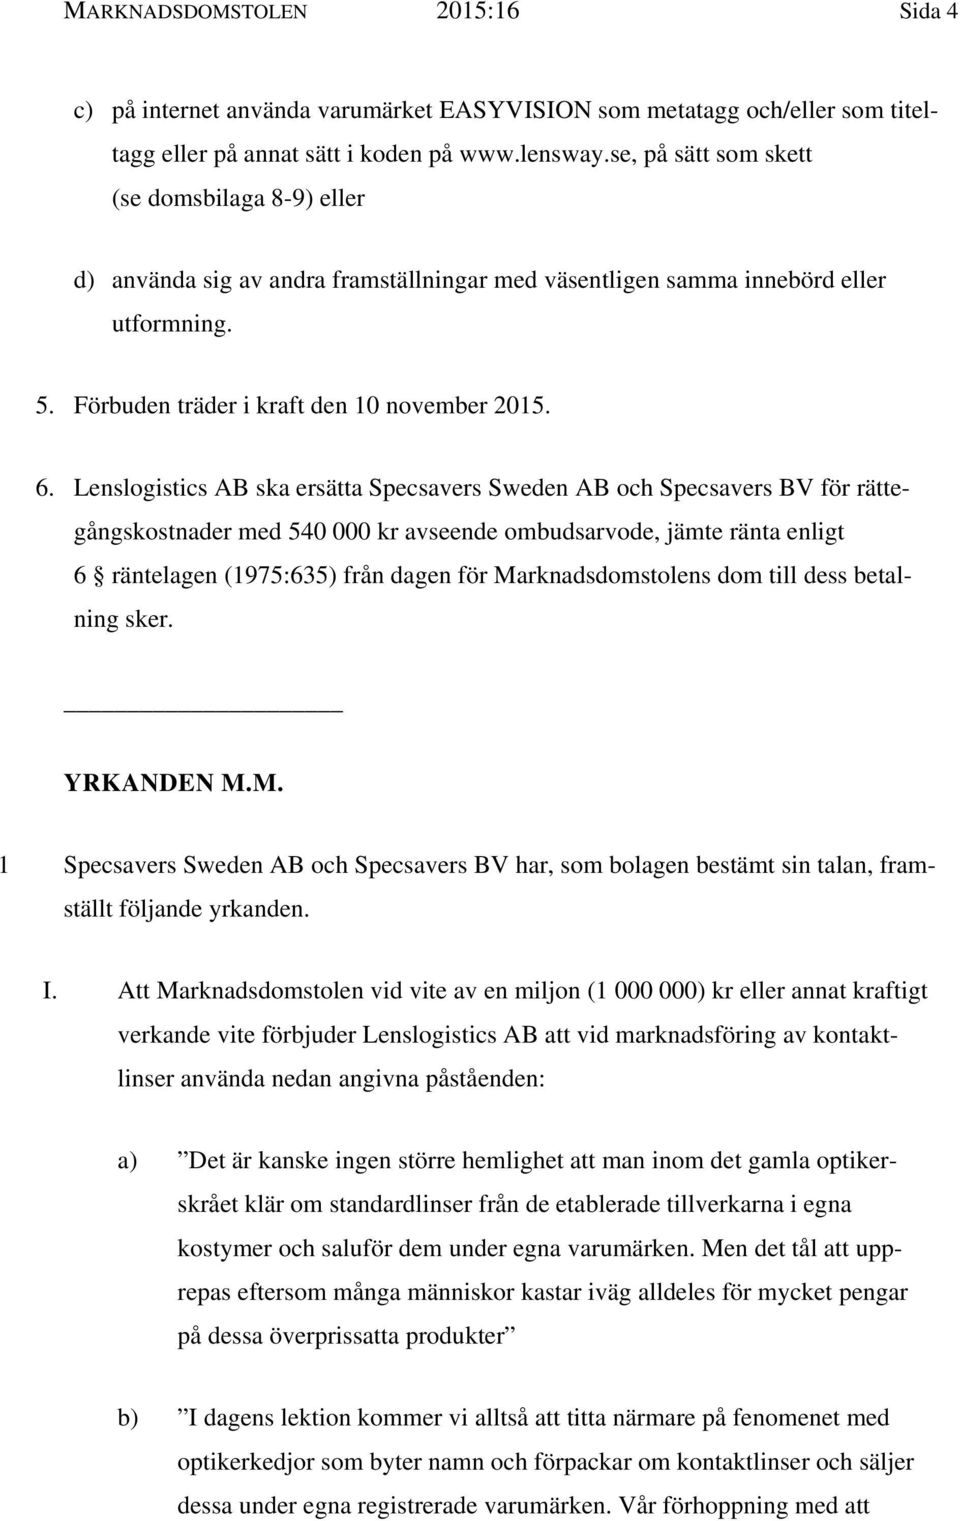 Lenslogistics AB ska ersätta Specsavers Sweden AB och Specsavers BV för rättegångskostnader med 540 000 kr avseende ombudsarvode, jämte ränta enligt 6 räntelagen (1975:635) från dagen för